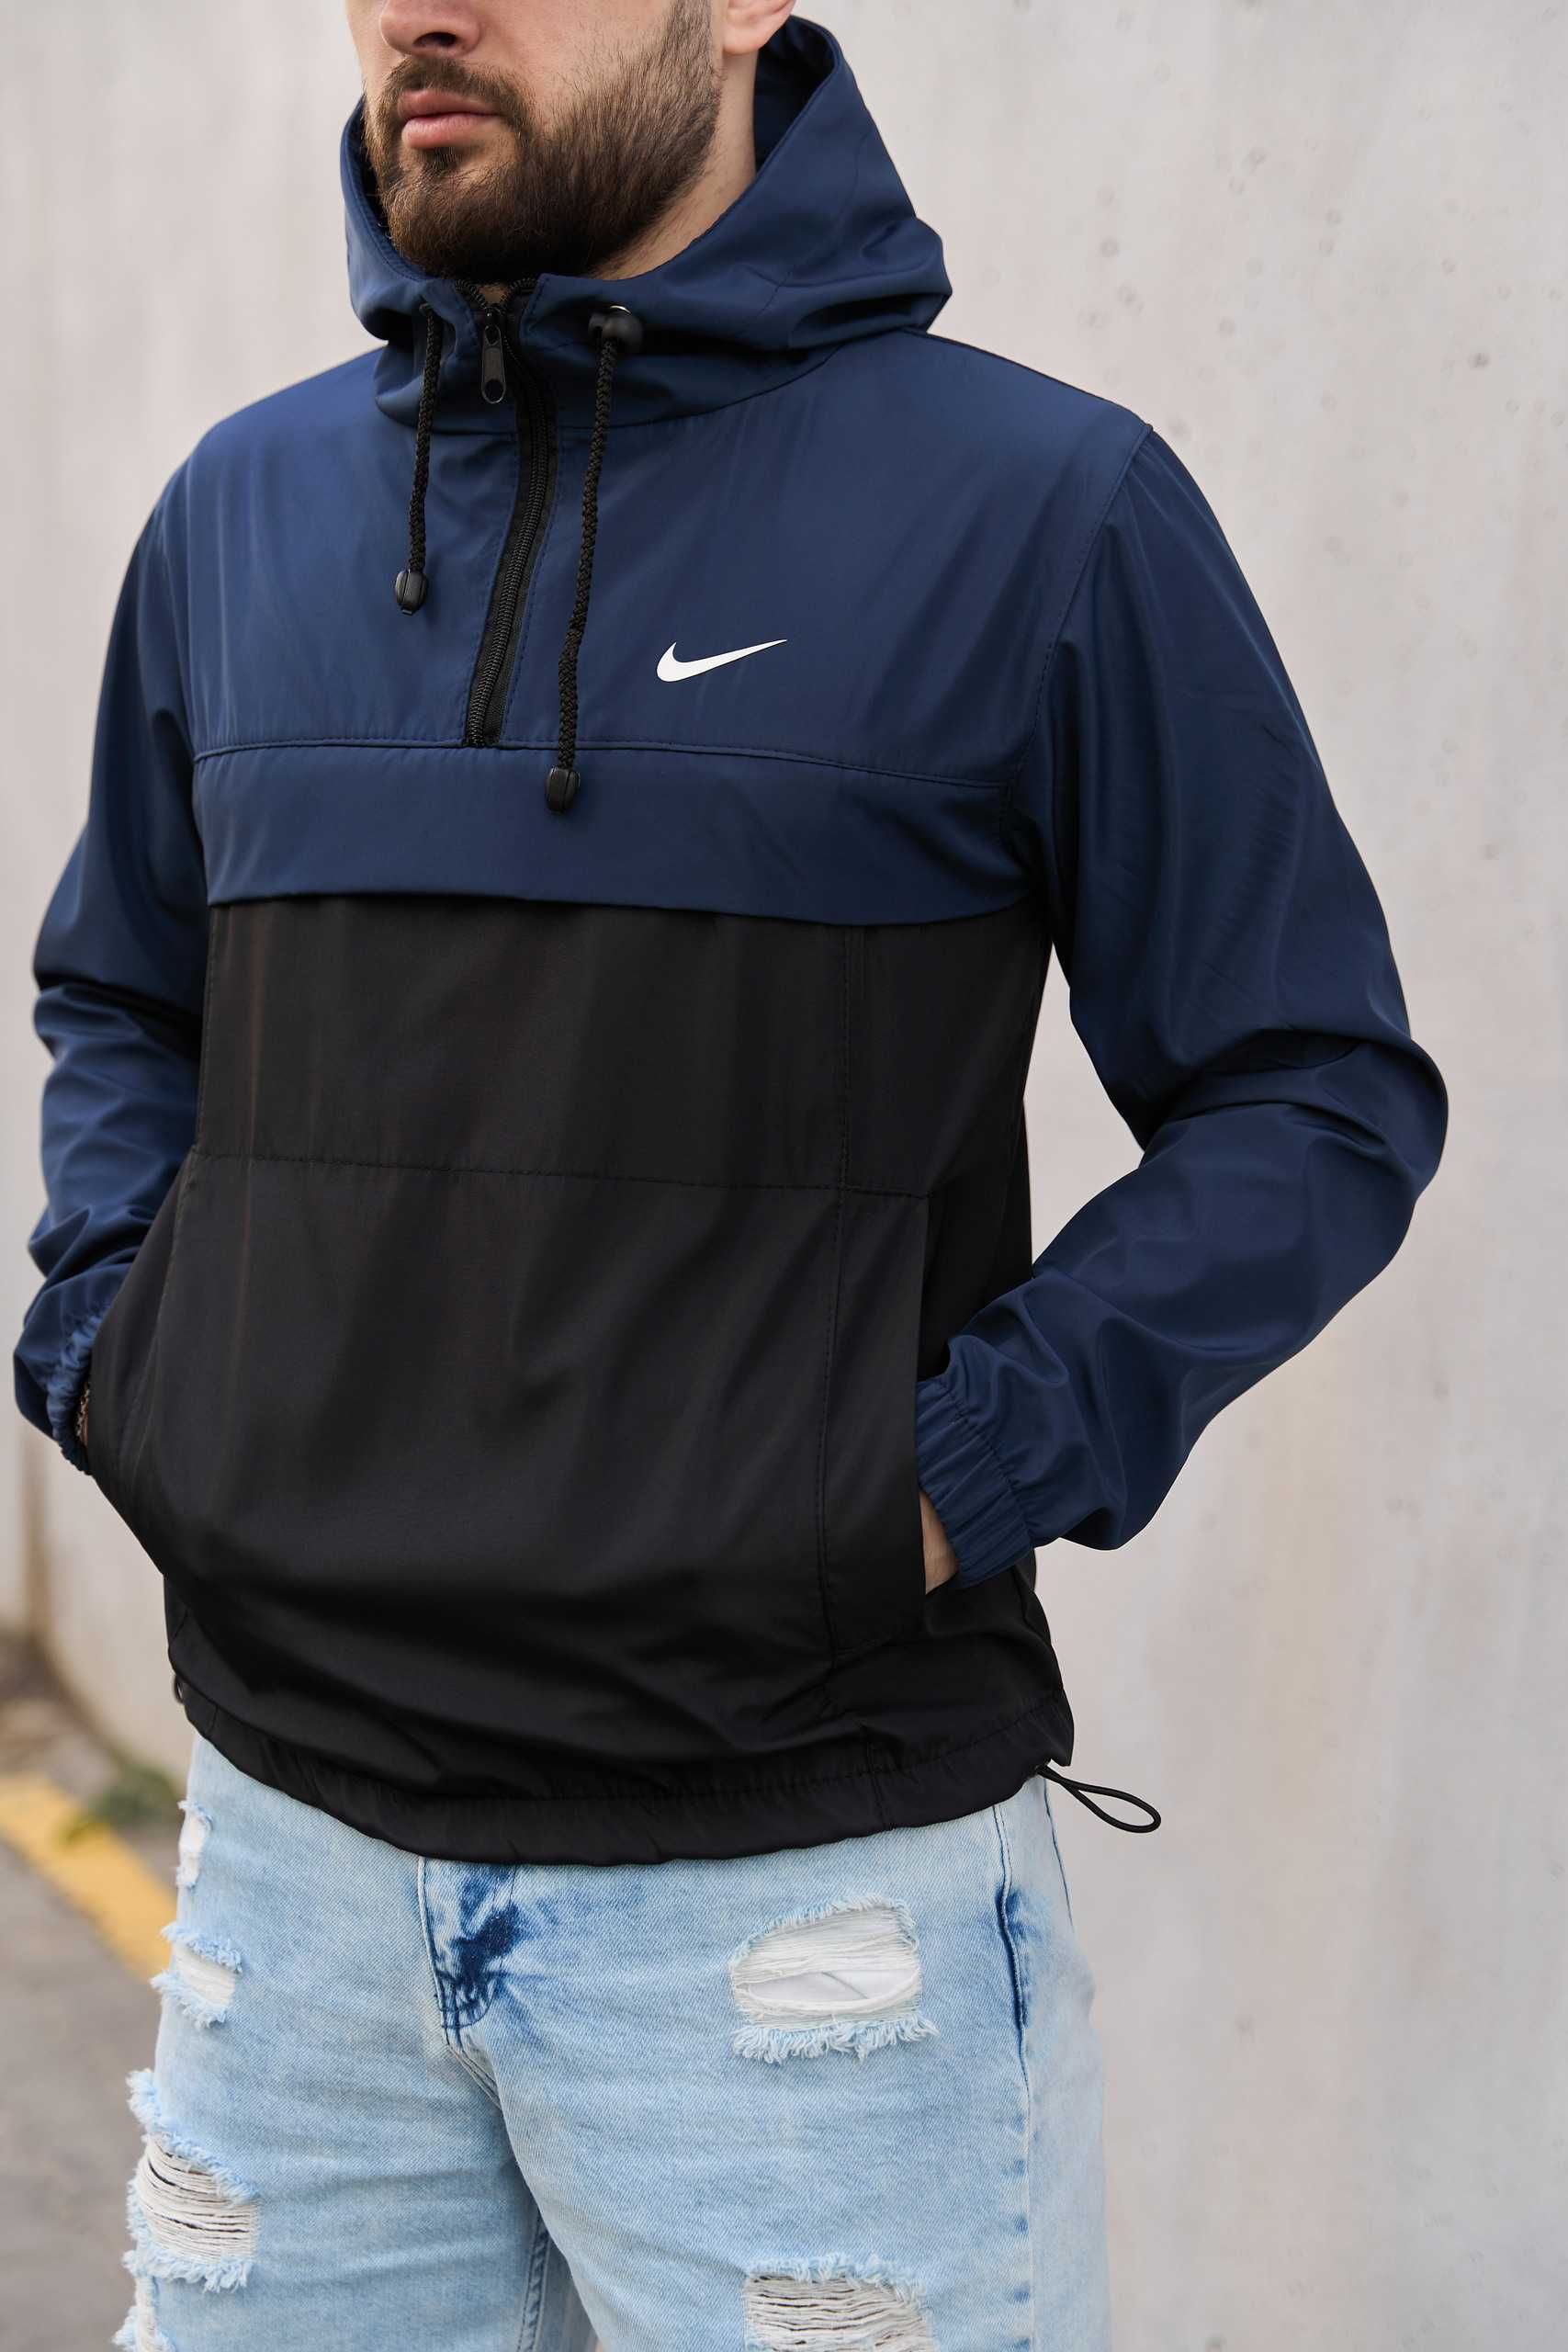 Анорак мужской весенний чёрный с синим ветровка Nike Найк